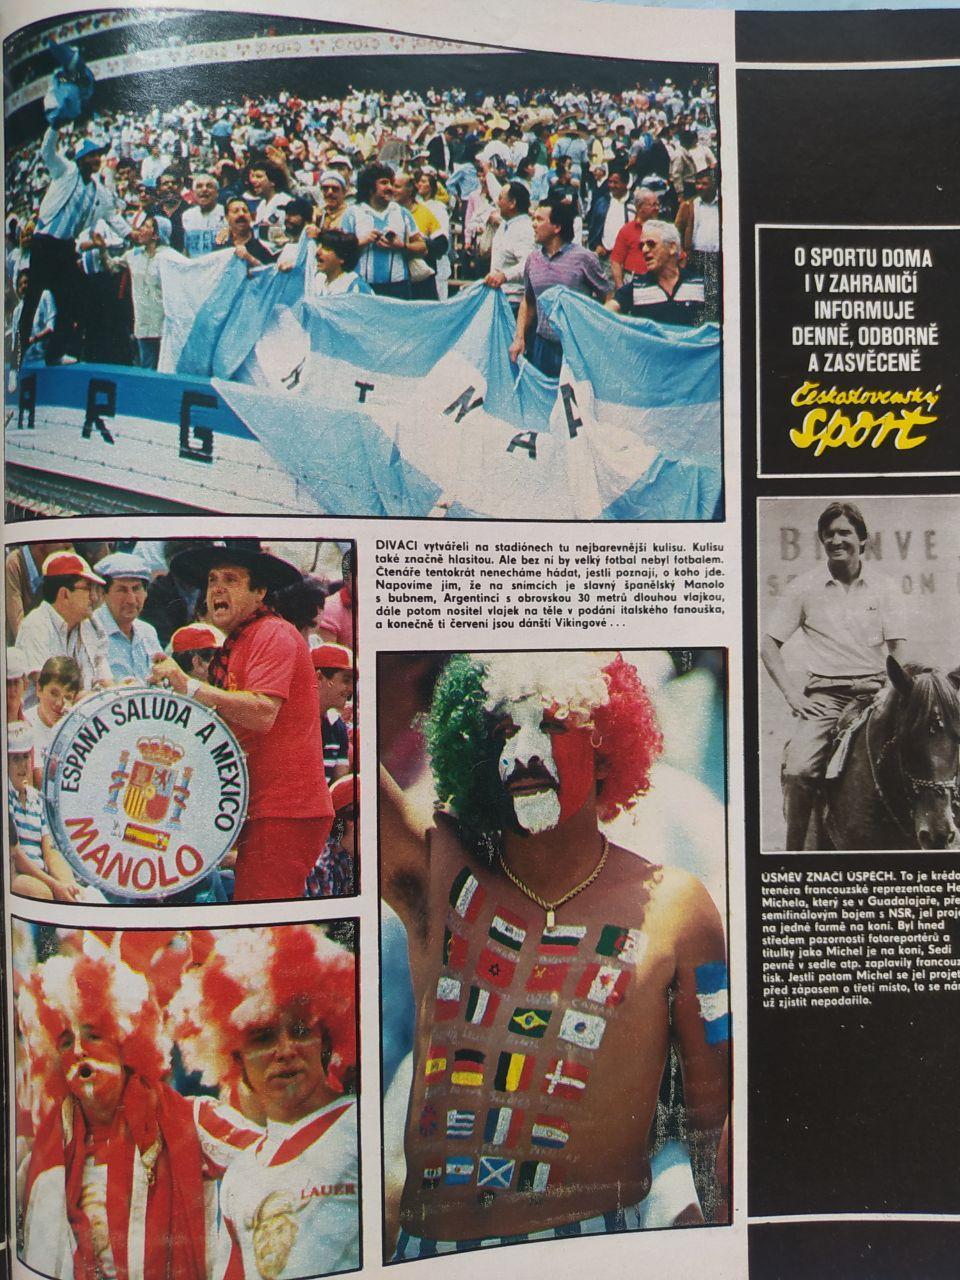 Спецвыпуск Стадион Чехия № 30 за 1986 г. посвящен чм футбол в Мексике 1986 г. 5